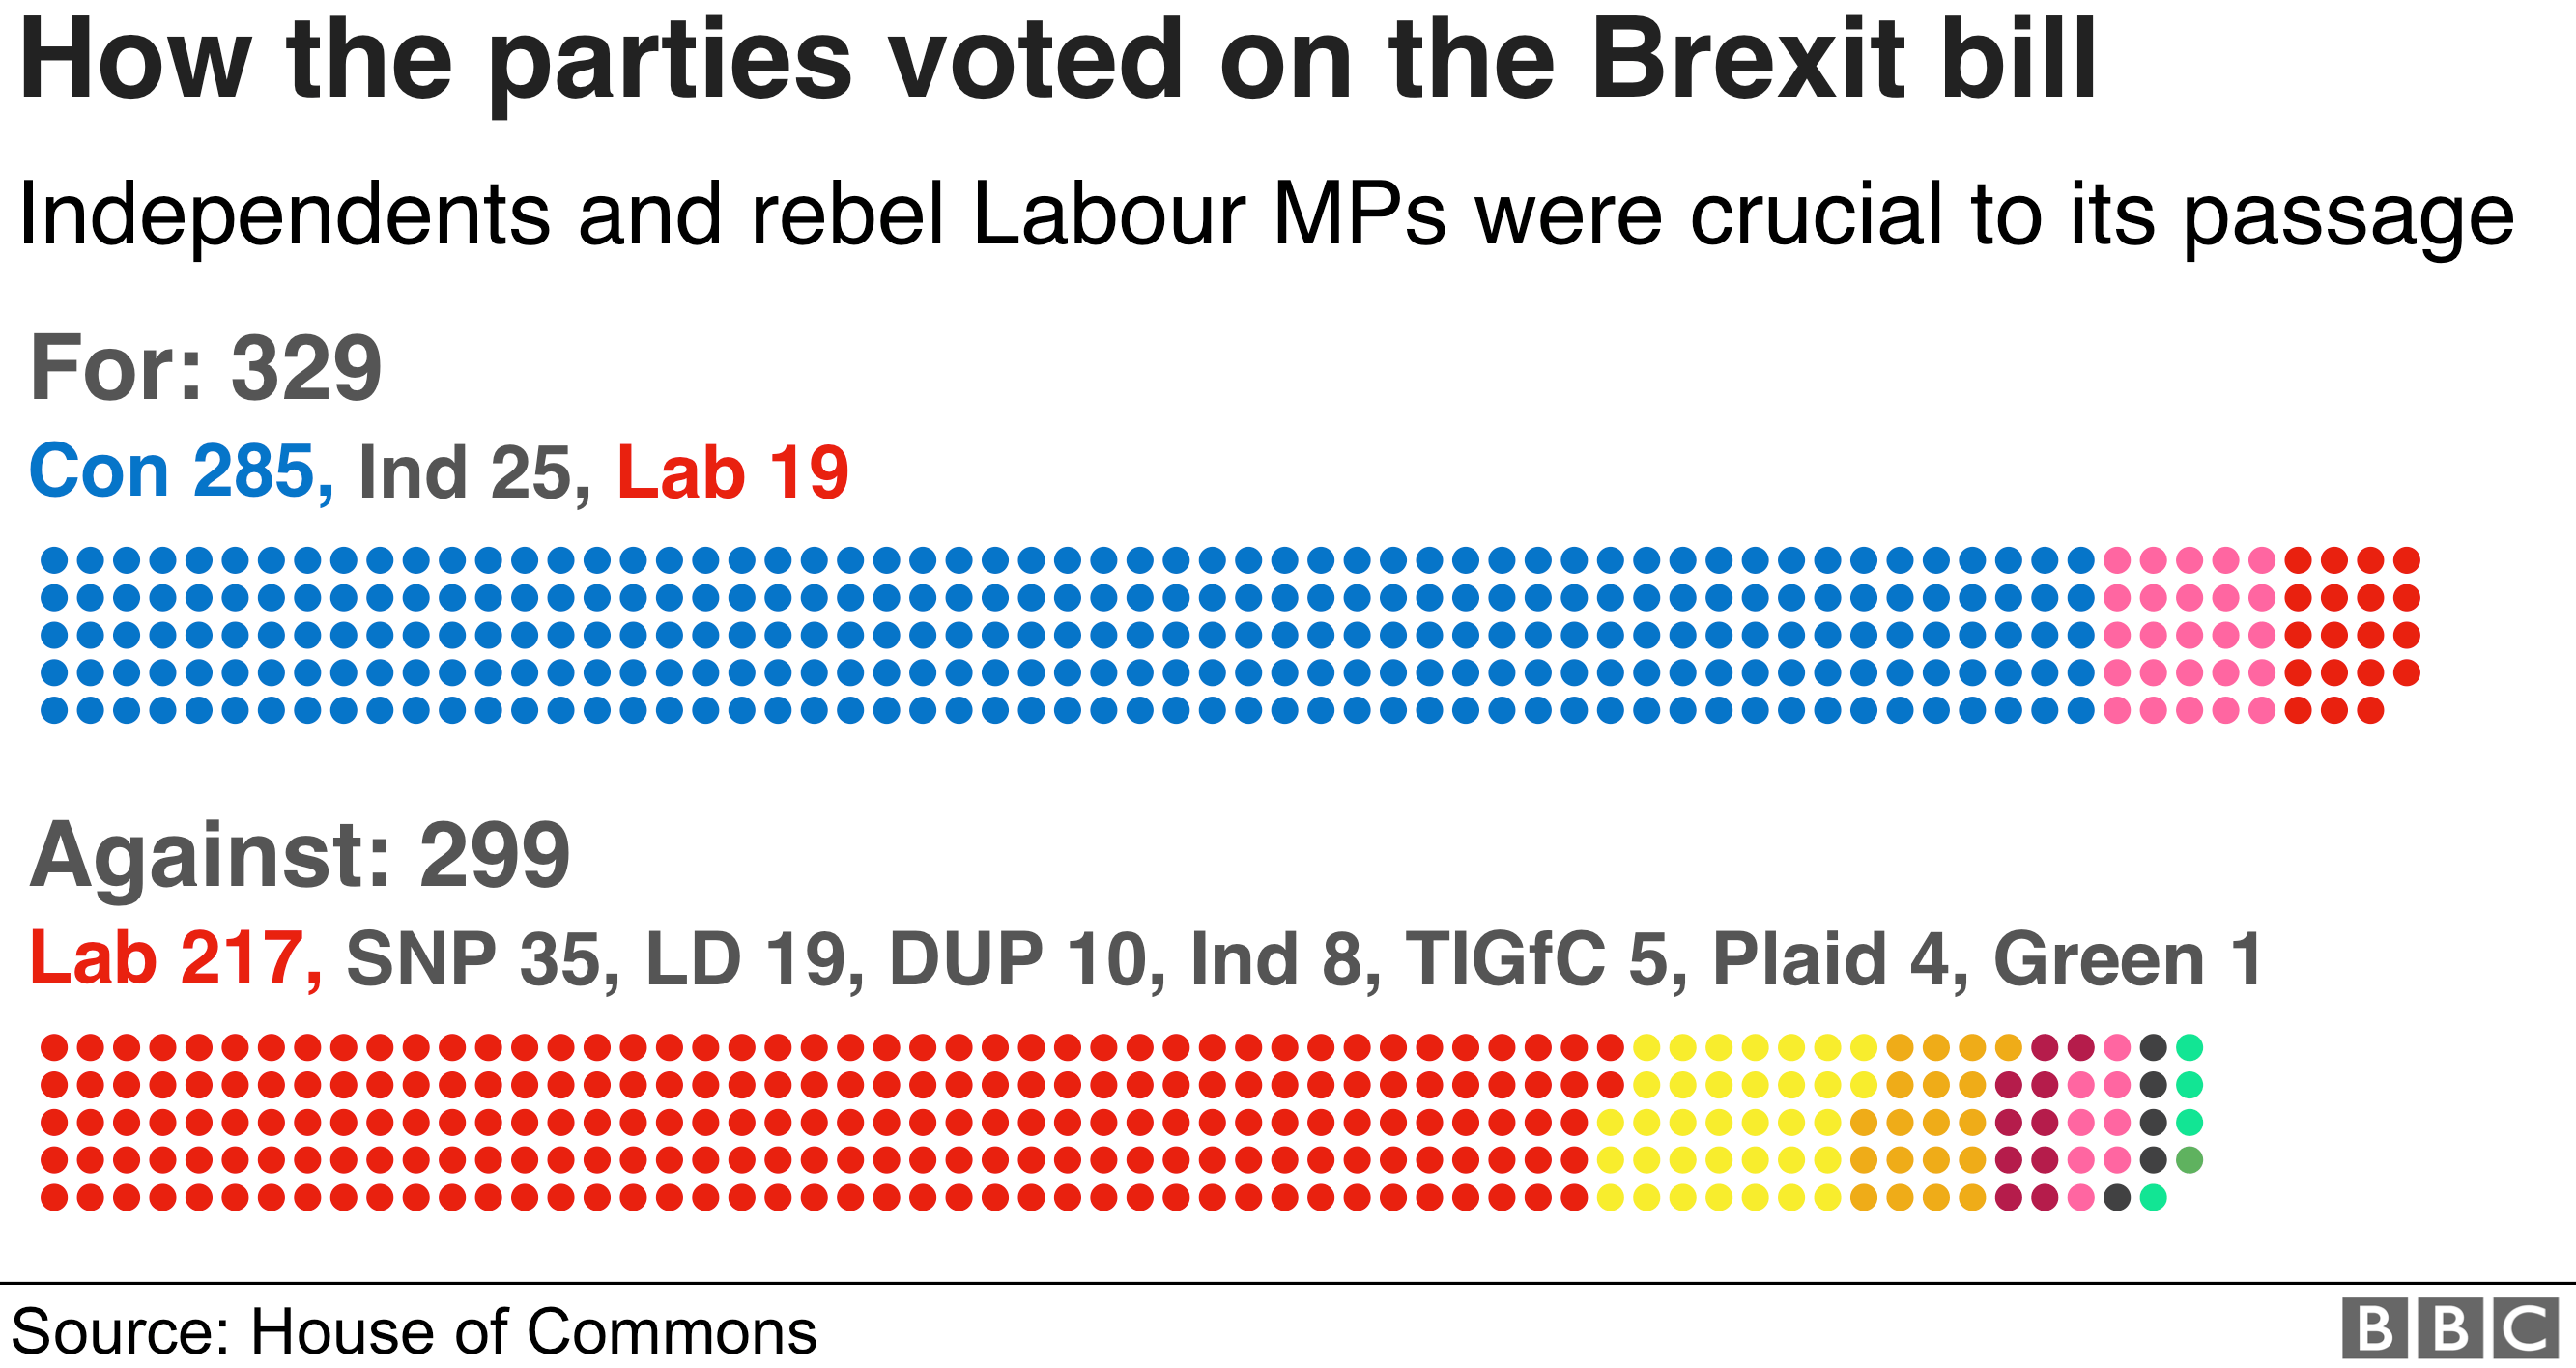 Правительство выиграло голосование за Брексит с 329 голосами против 299